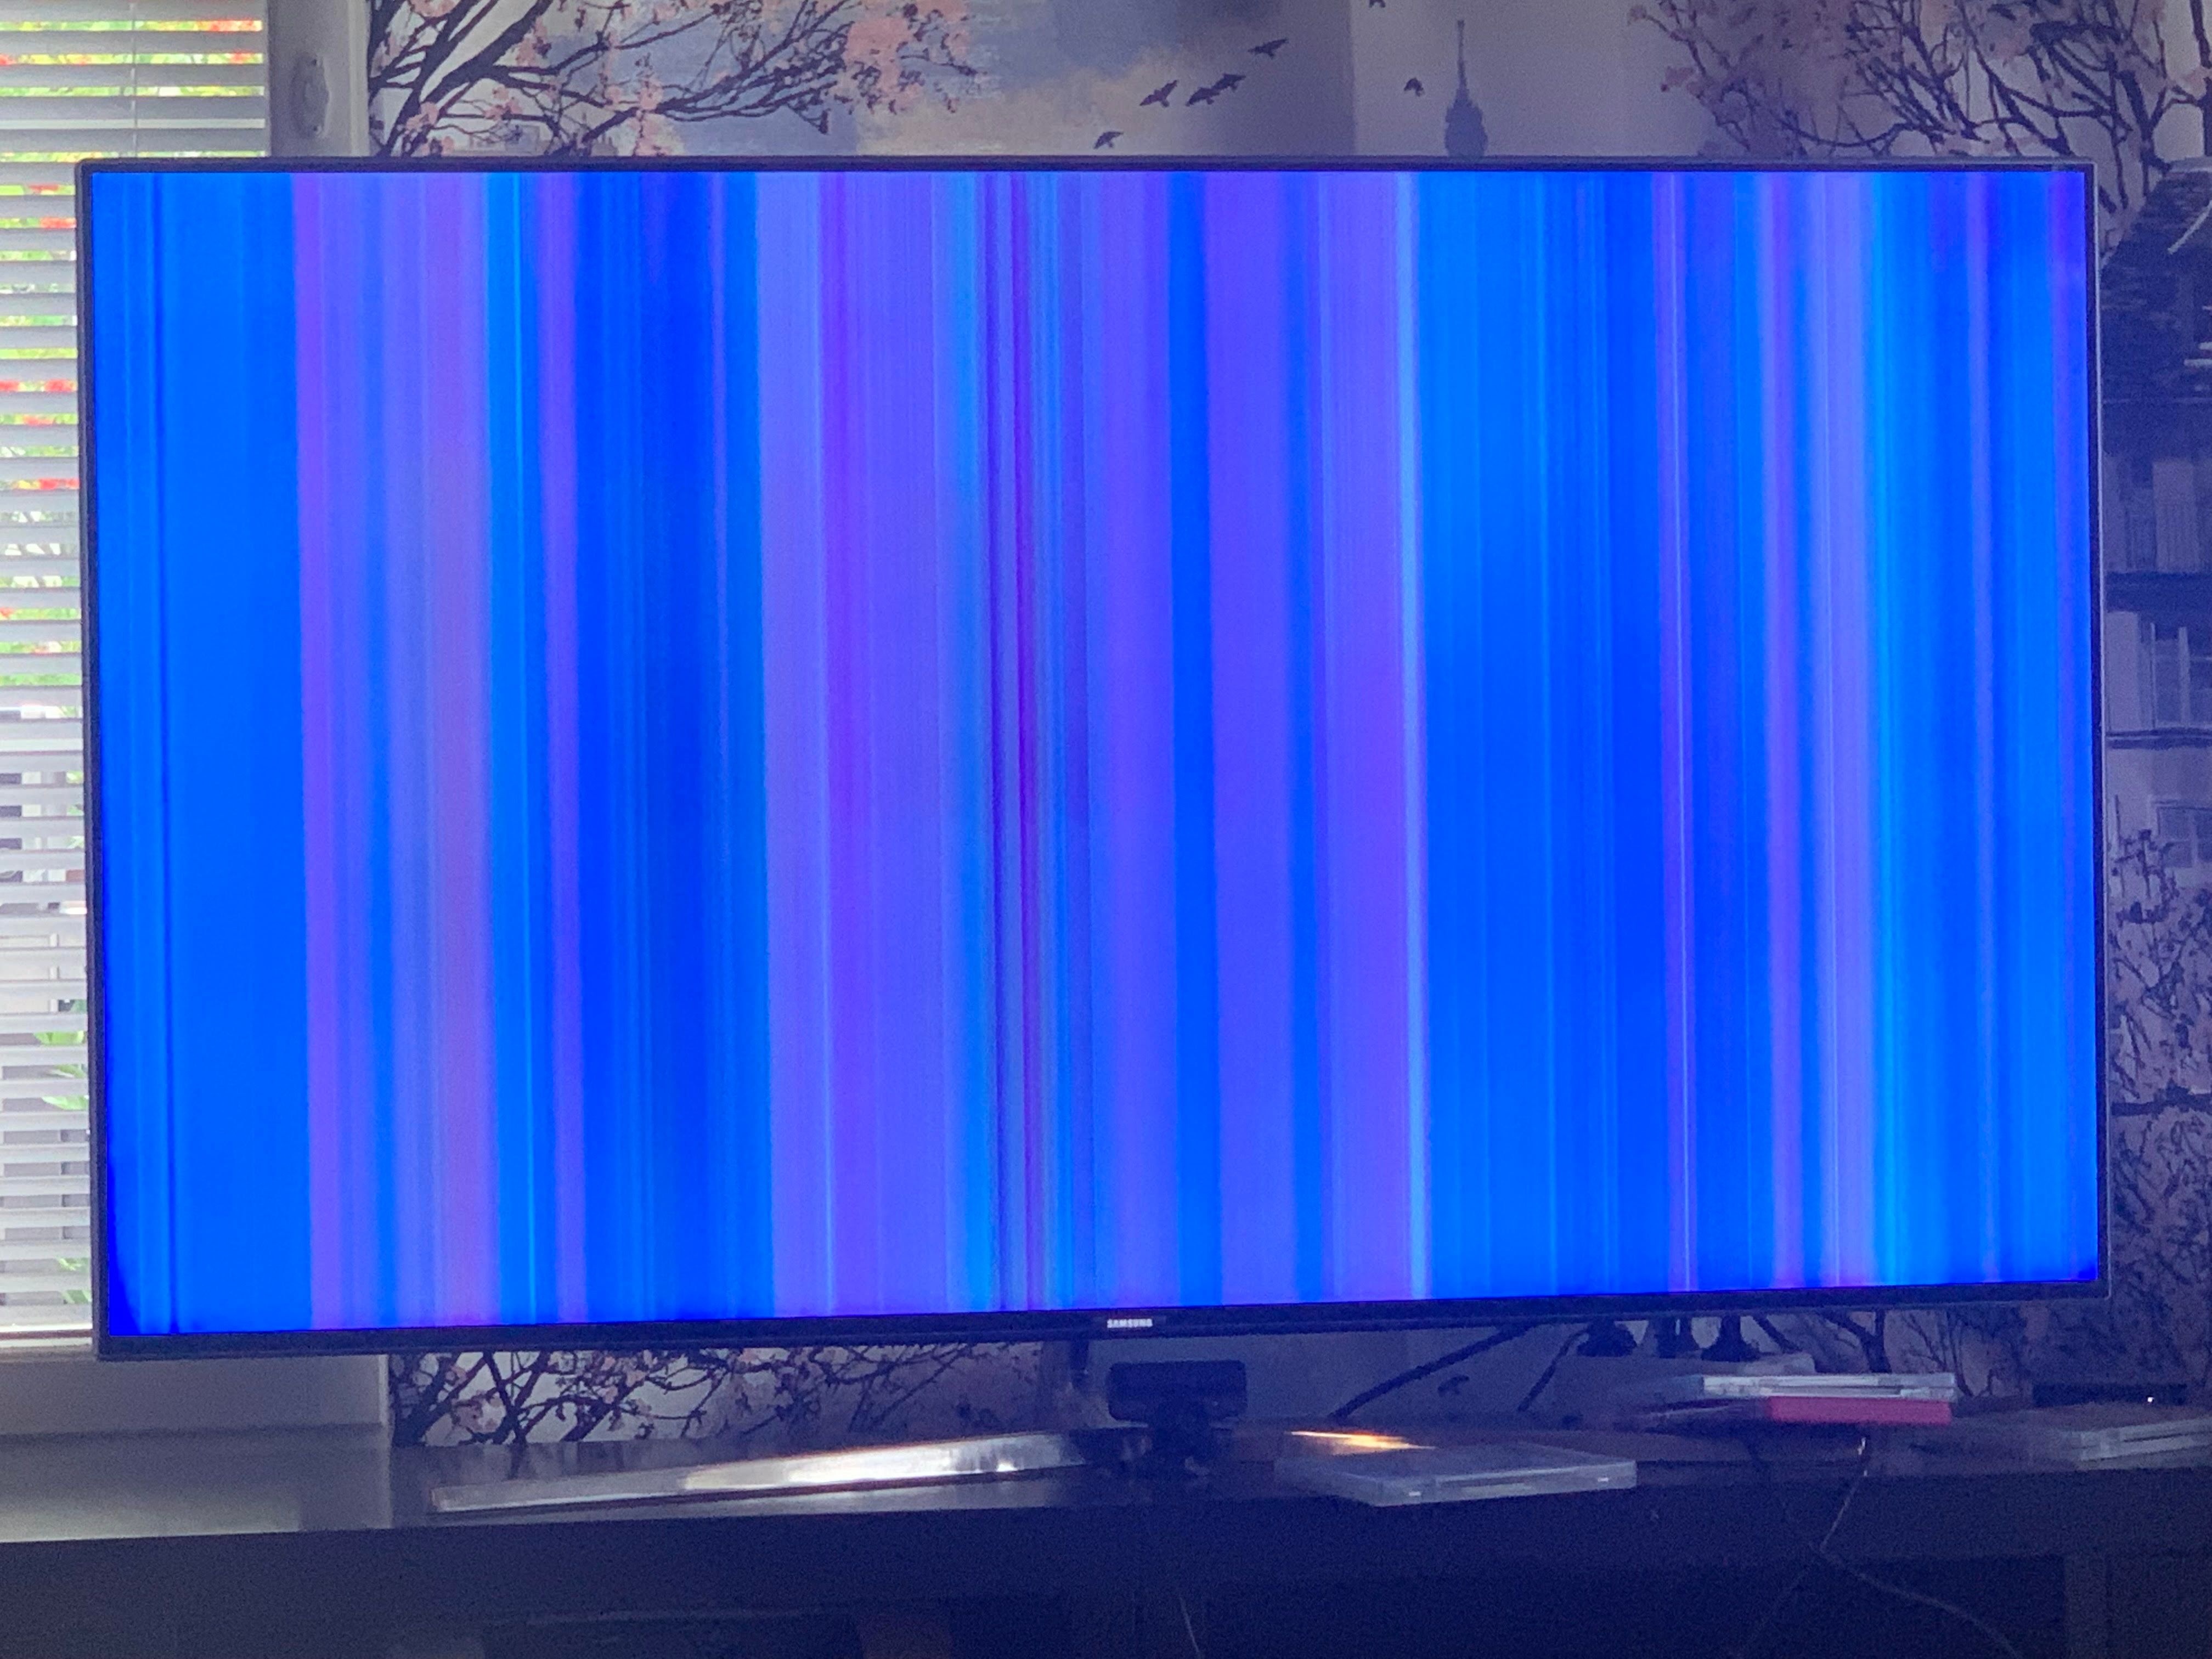 Самсунг вертикальный телевизор. Цветные полосы на экране телевизора. Android TV вертикальная полоса. Вертикальная полоса на телевизоре самсунг 2012. Ue40j5200au зеленые вертикальные полосы.